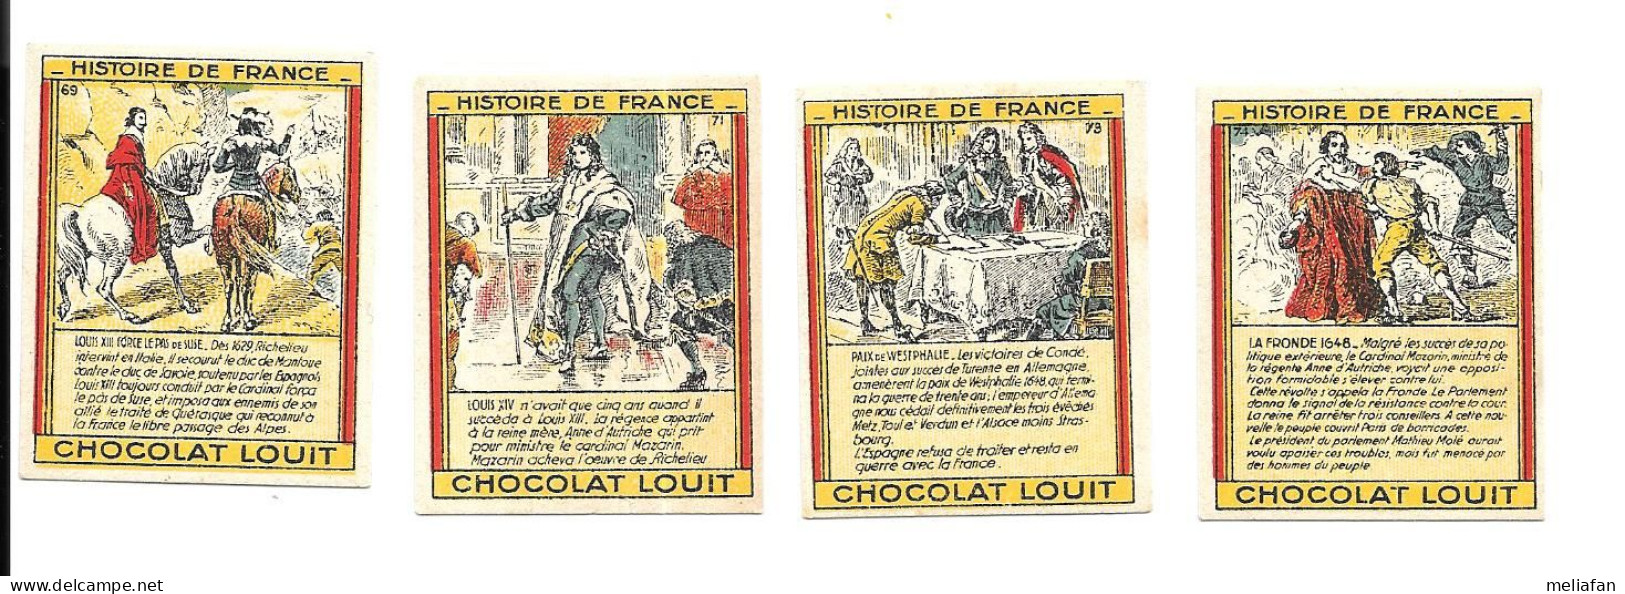 CX99 - BON POINTS CHOCOLAT LOUIT - LOUIS XIII - LOUIS XIV - PAIX DE WESTPHALIE - LA FRONDE 1648 - Diplomi E Pagelle